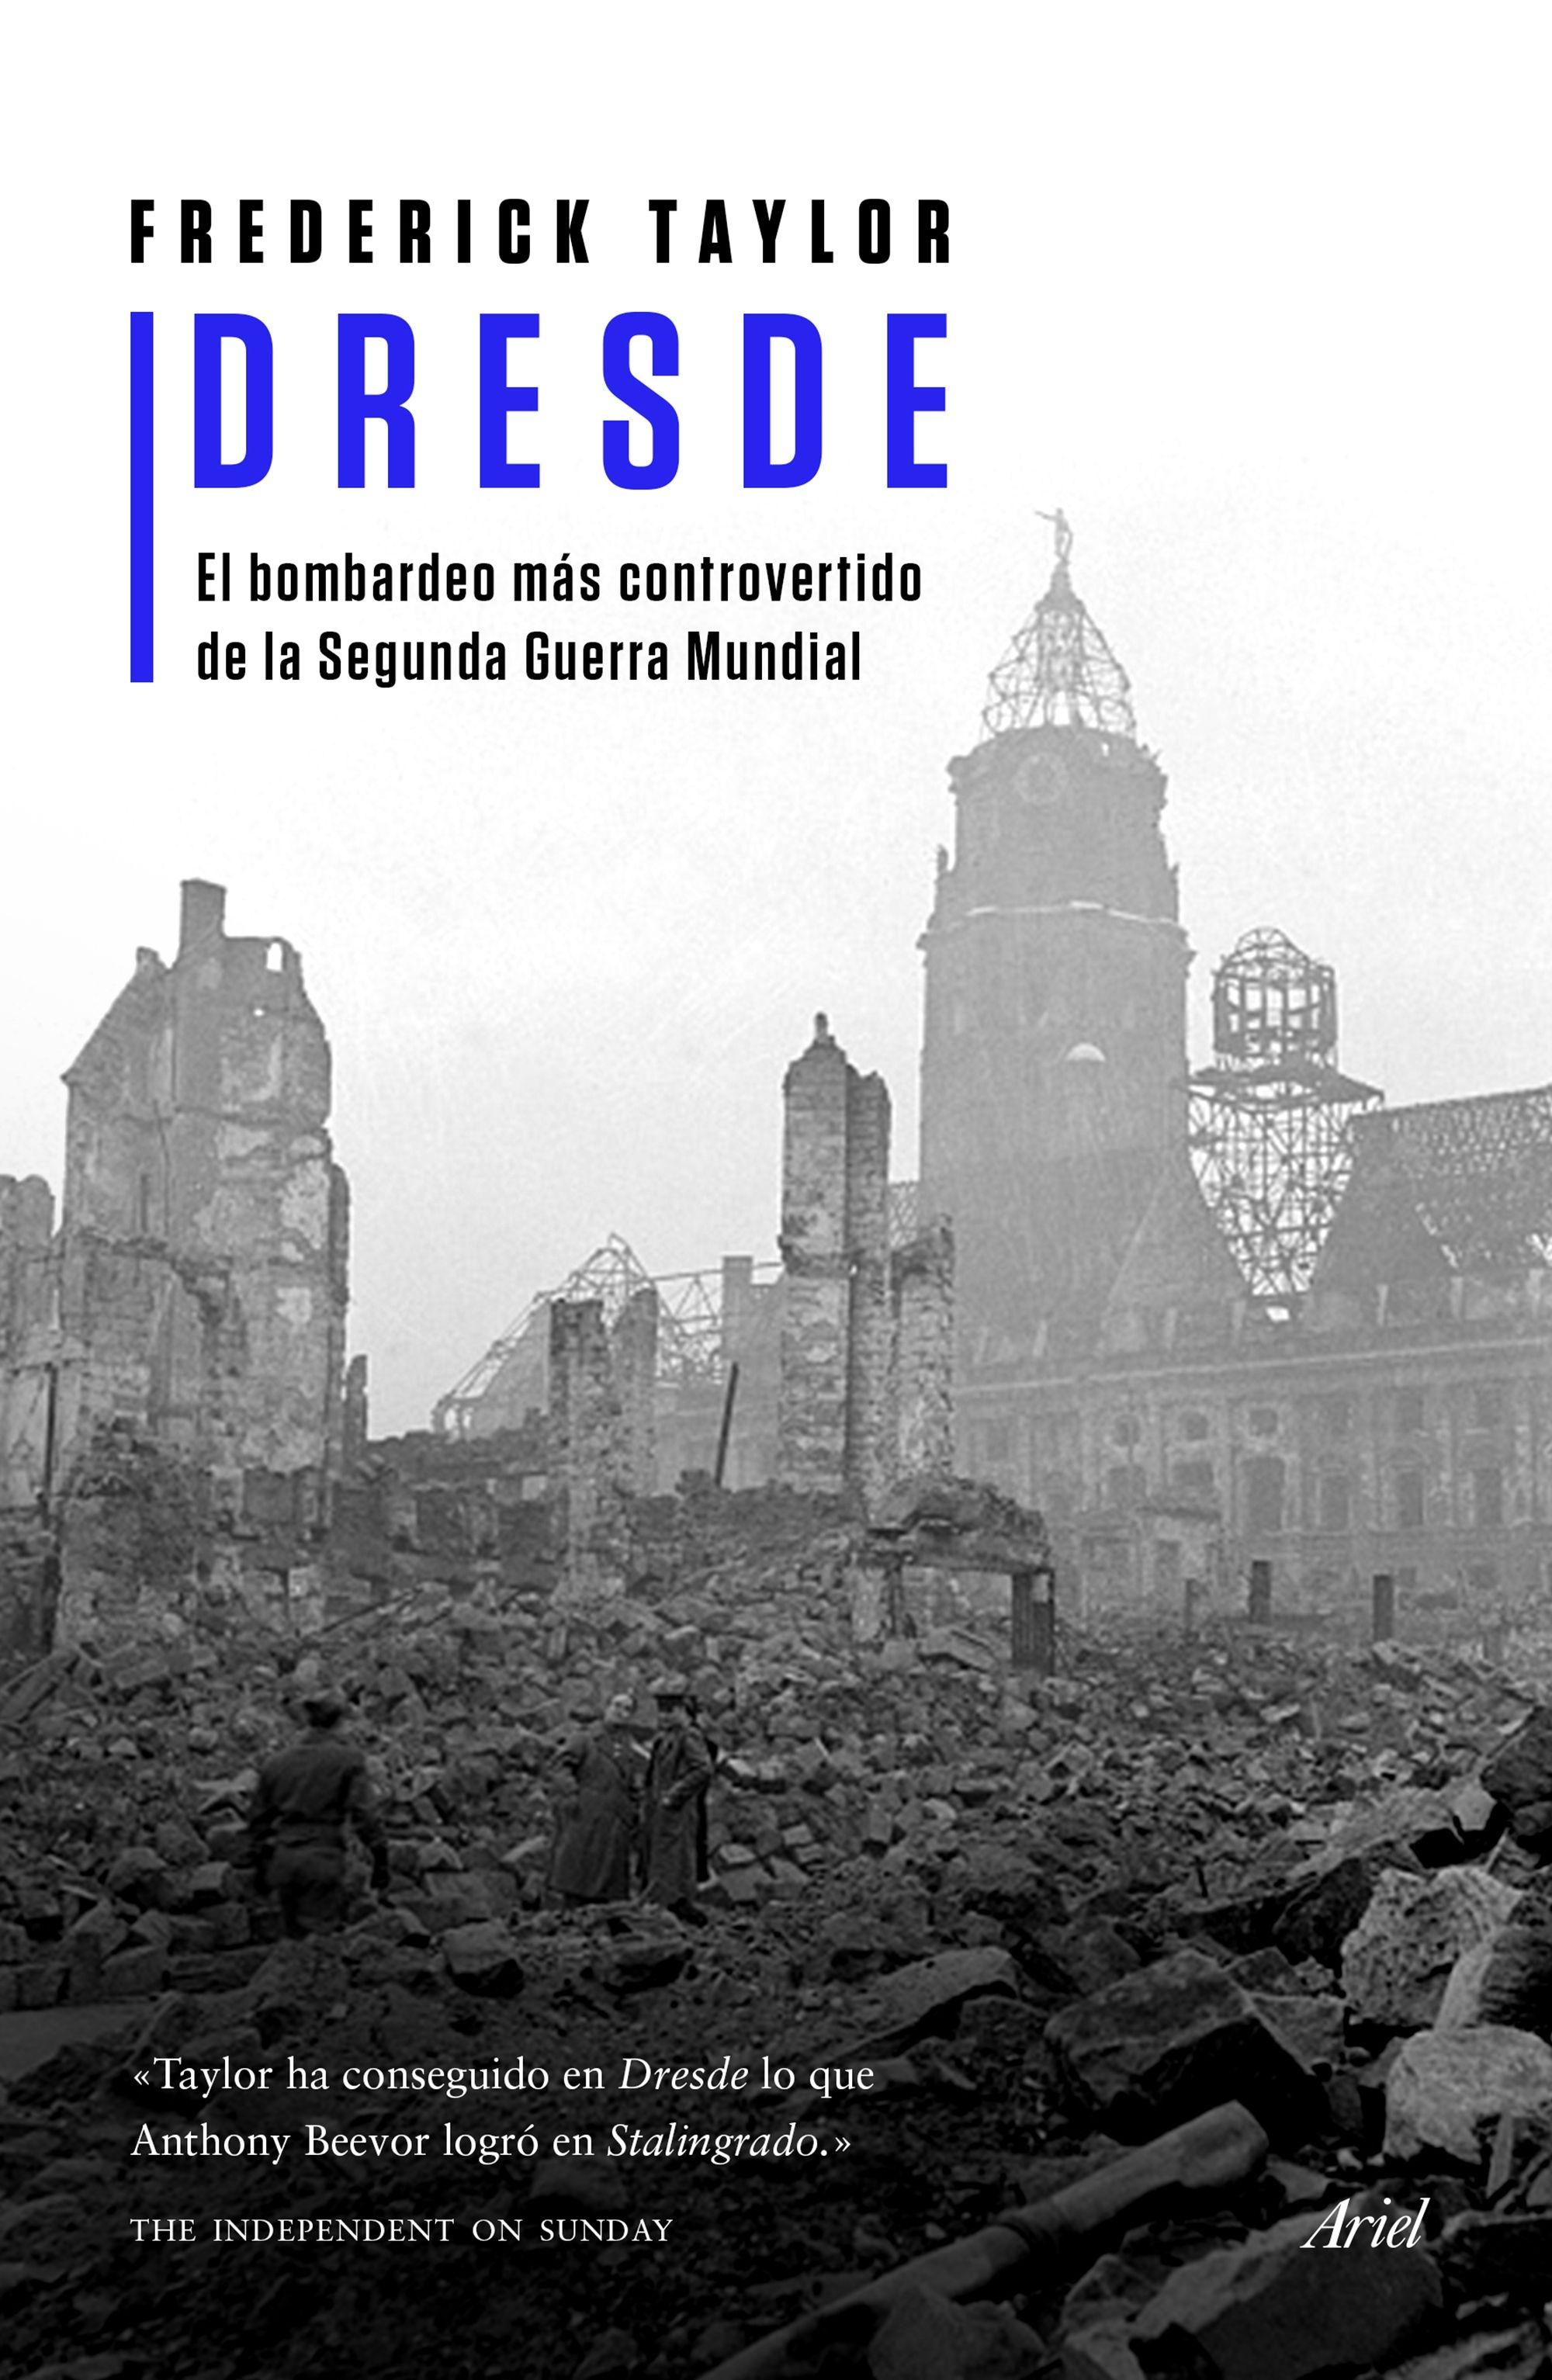 Dresde "El bombardeo más controvertido de la Segunda Guerra Mundial"